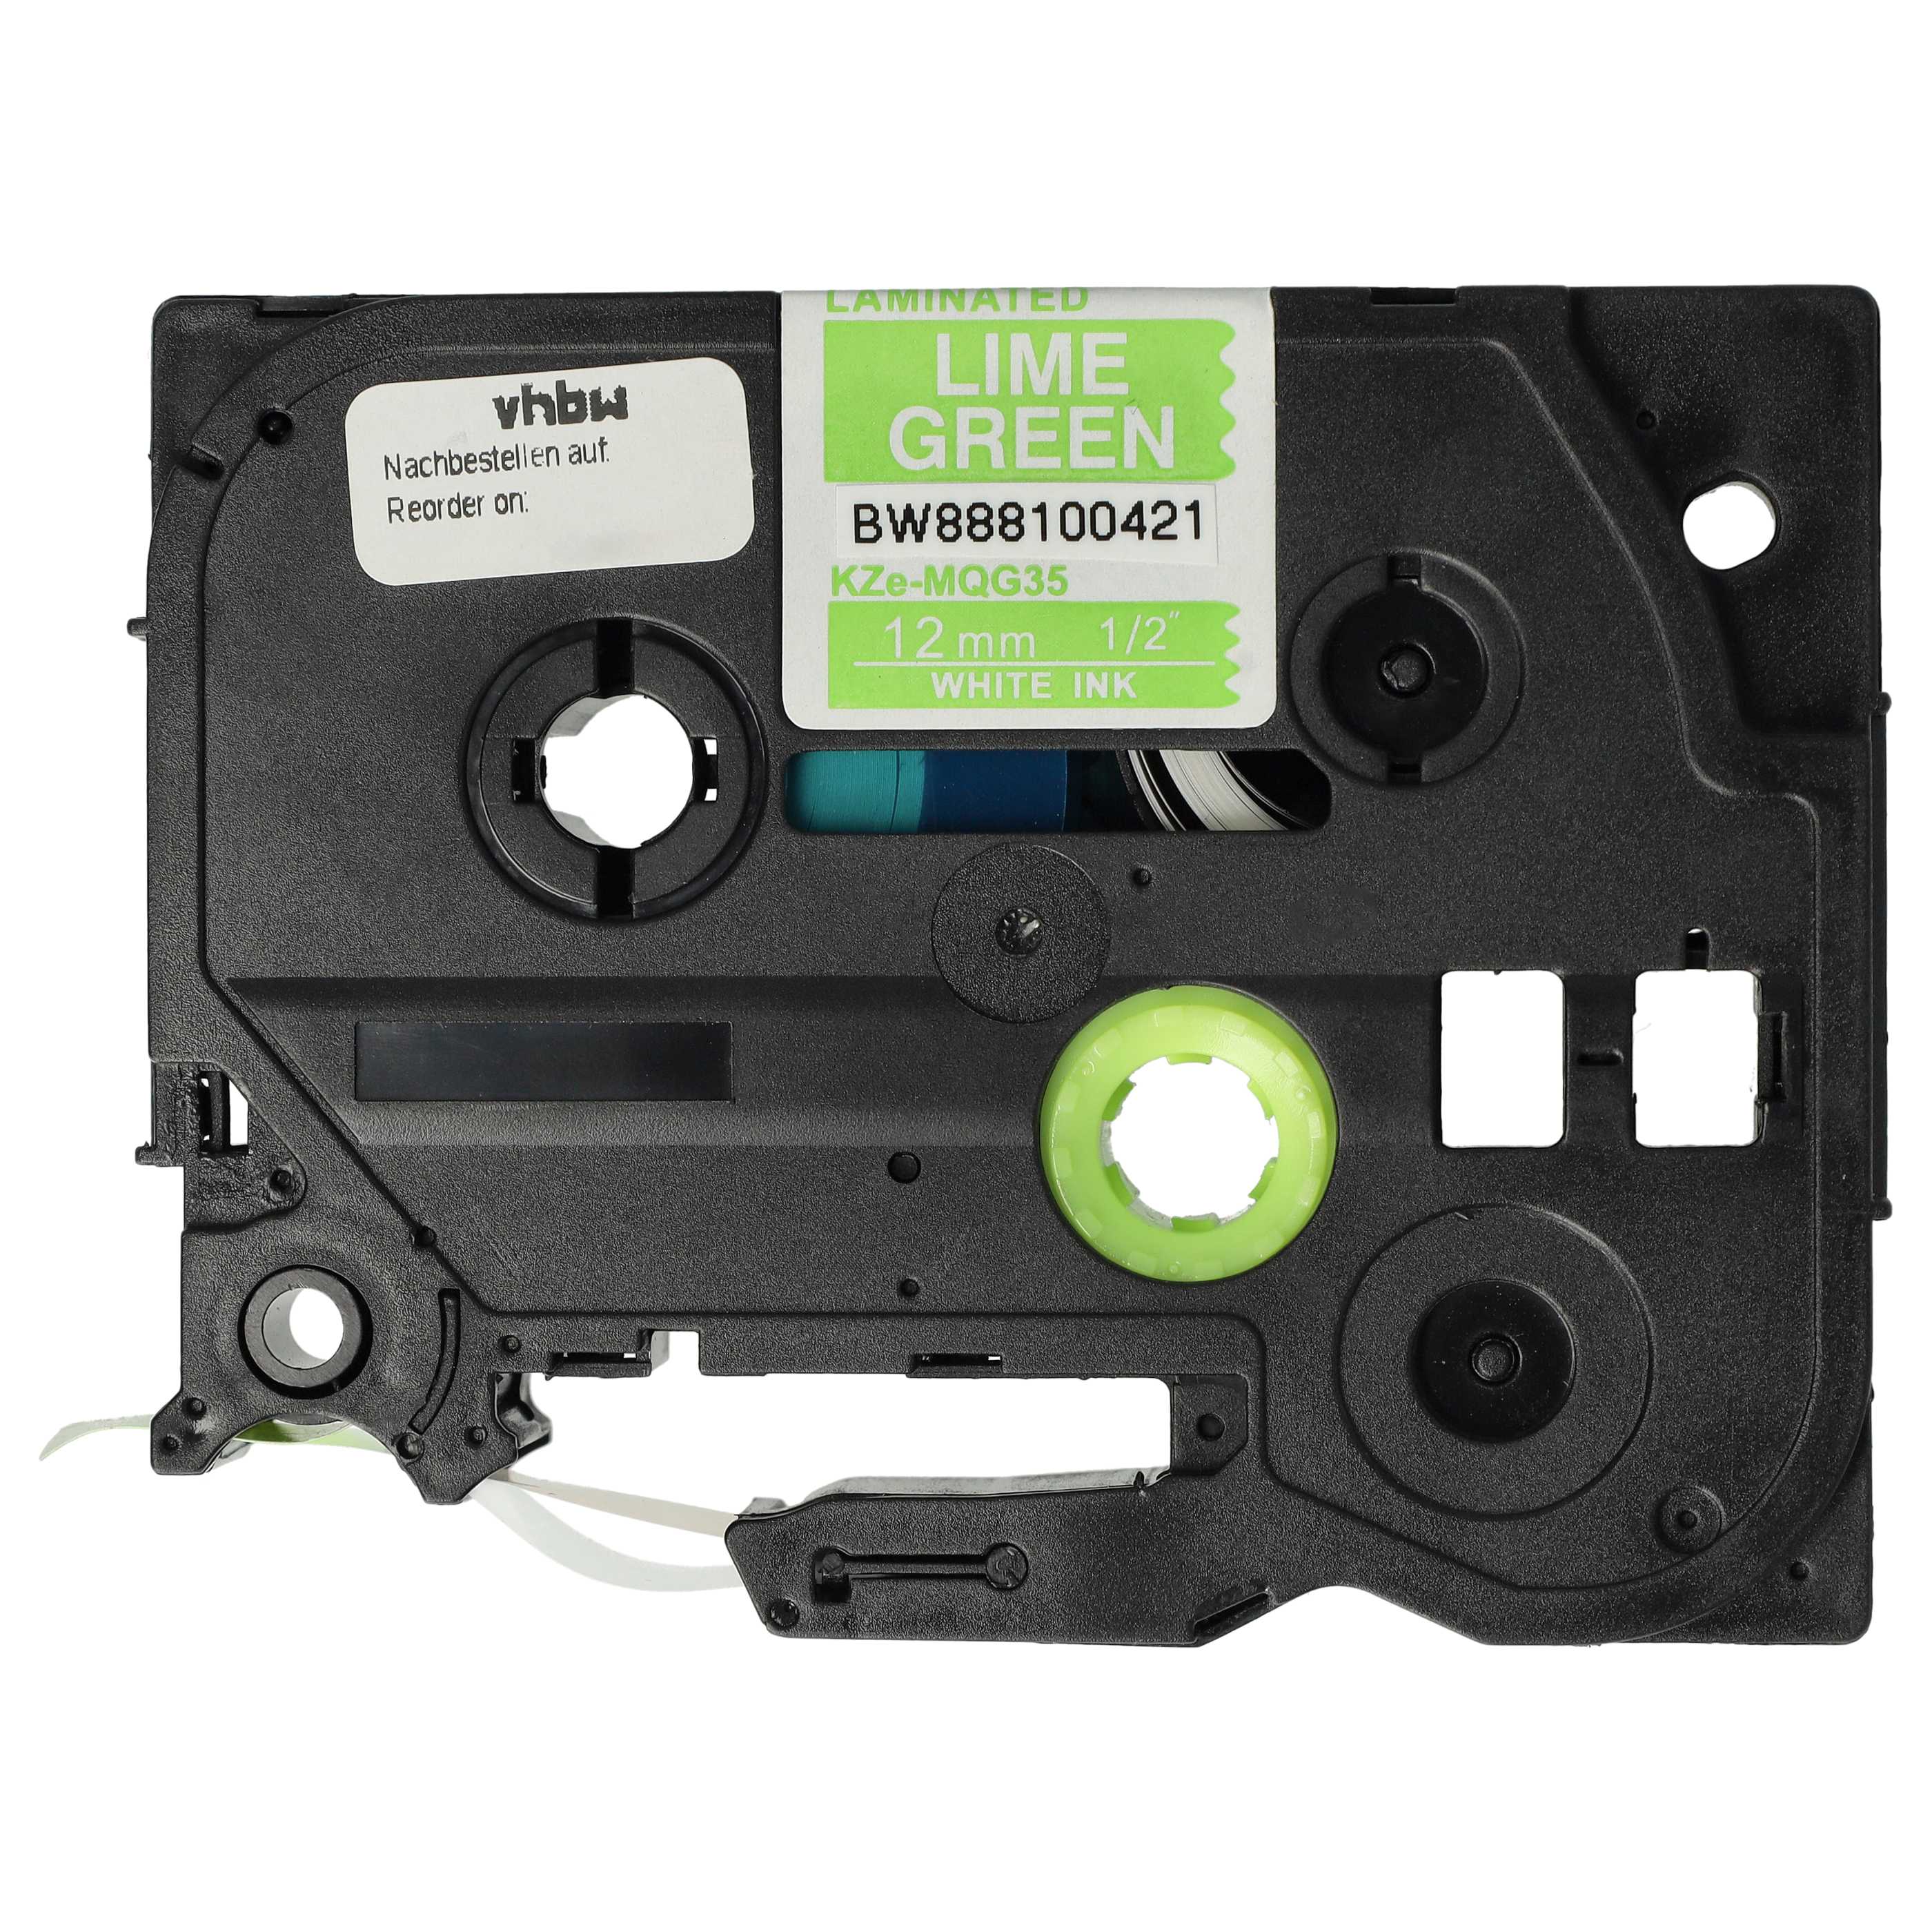 Cassetta nastro sostituisce Brother TZE-MQG35 per etichettatrice Brother 12mm bianco su verde chiaro